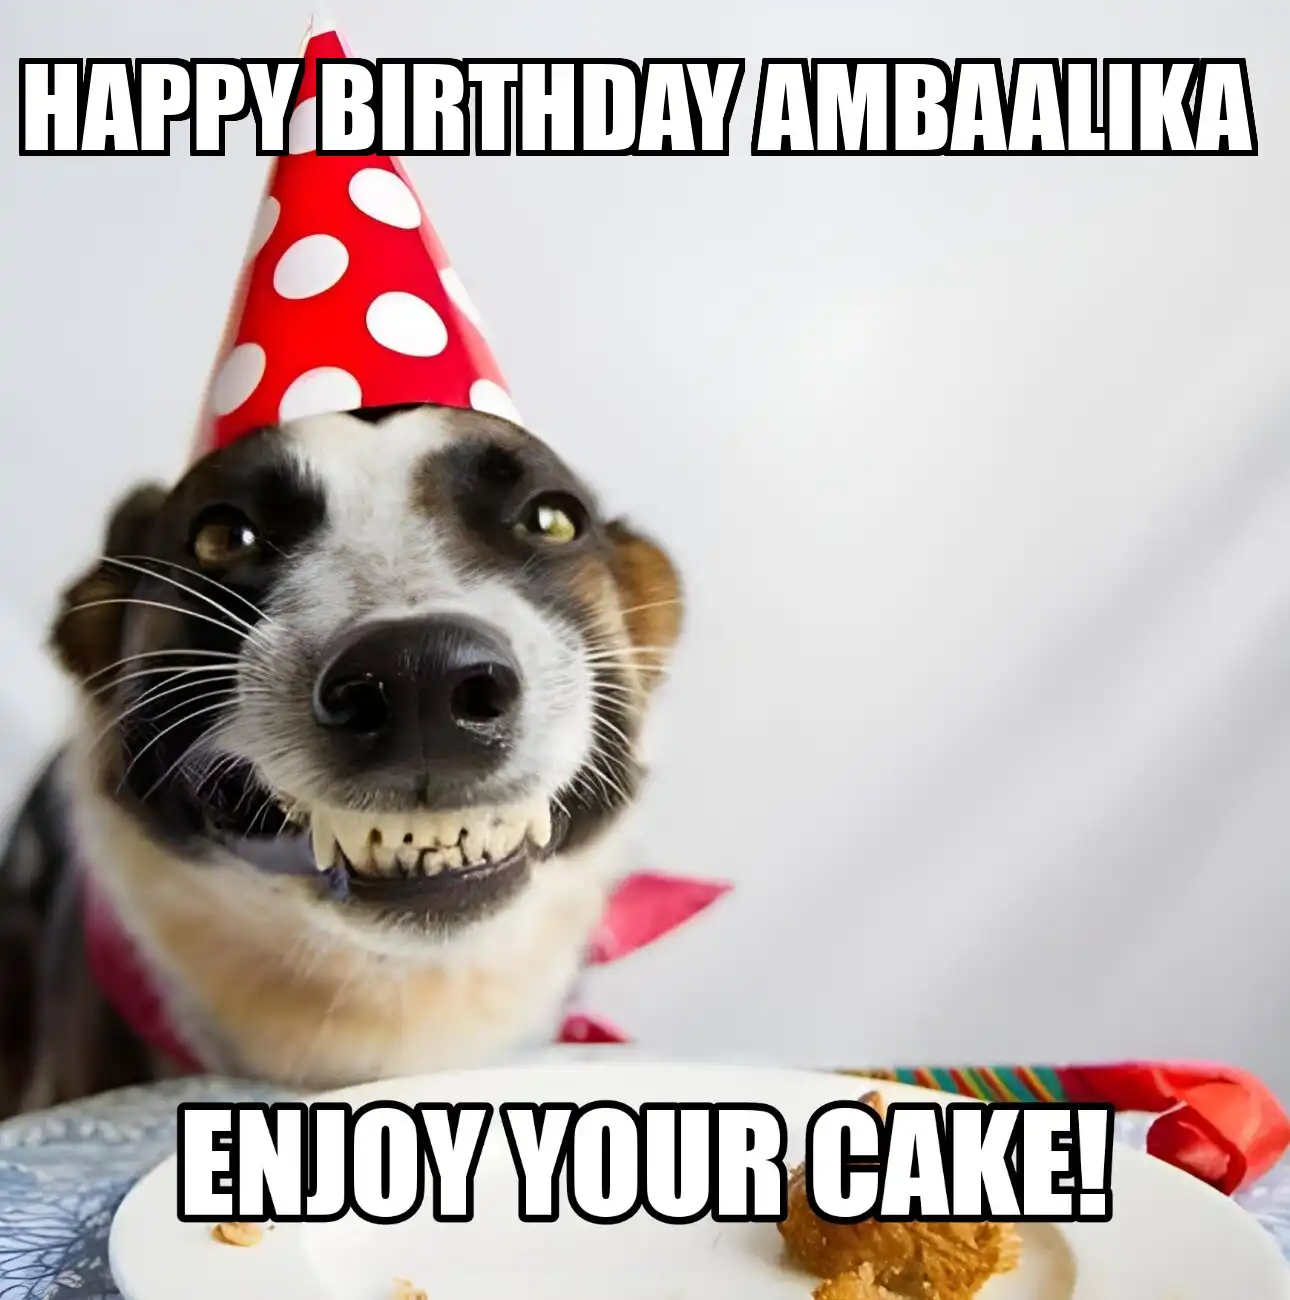 Happy Birthday Ambaalika Enjoy Your Cake Dog Meme